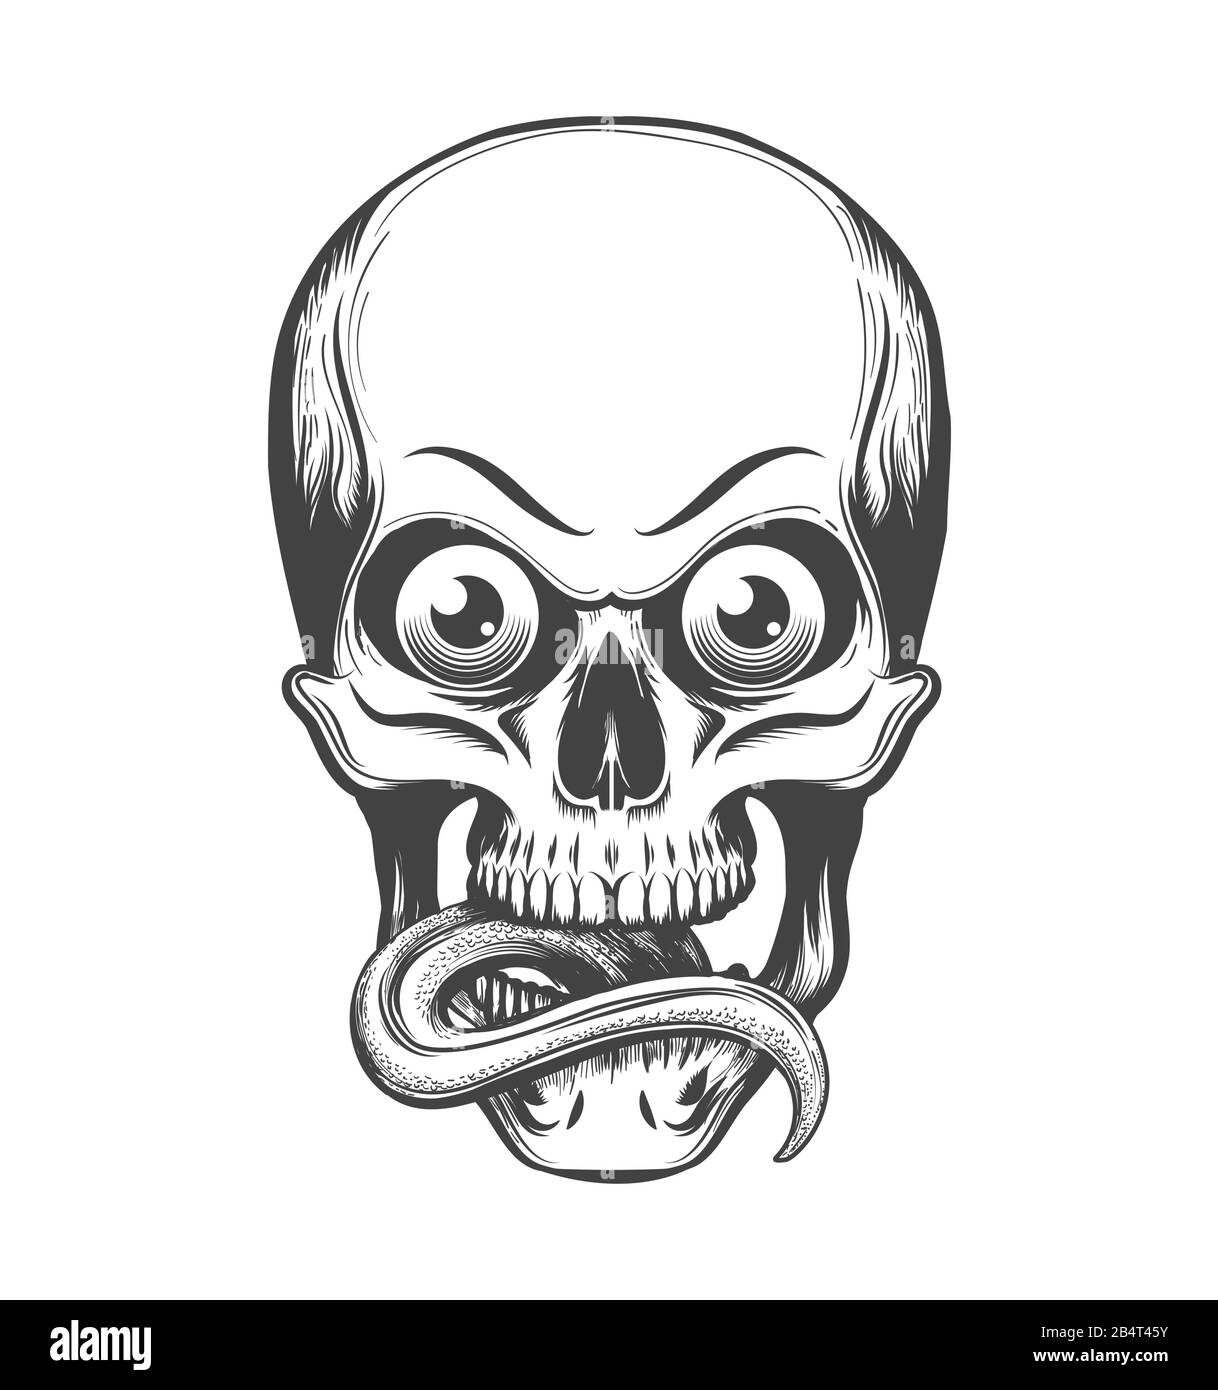 Crâne humain avec yeux et langue s'étiré en tatouage. Illustration vectorielle. Illustration de Vecteur